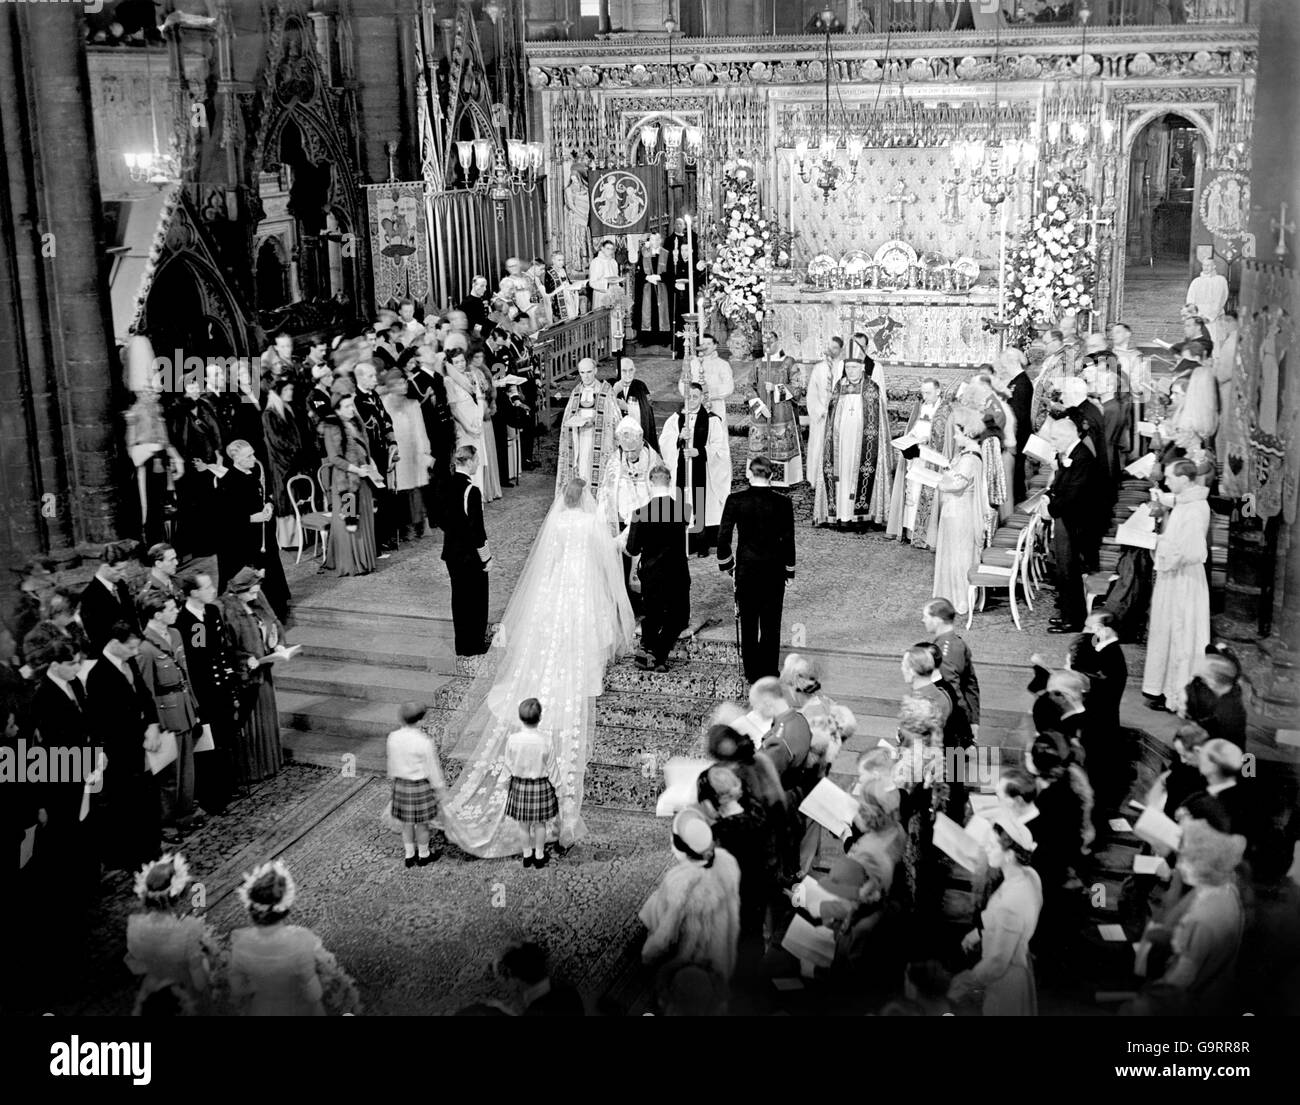 La scène à l'autel marche pendant la cérémonie royale de mariage à l'abbaye de Westminster. H.M le Roi se trouve à gauche de la mariée; à droite de l'époux se trouve le groomman, les marques de Milford Haven. Le train de la mariée est tenu par deux pages T.R.H Prince William de Gloucester et le Prince Michael de Kent. Banque D'Images